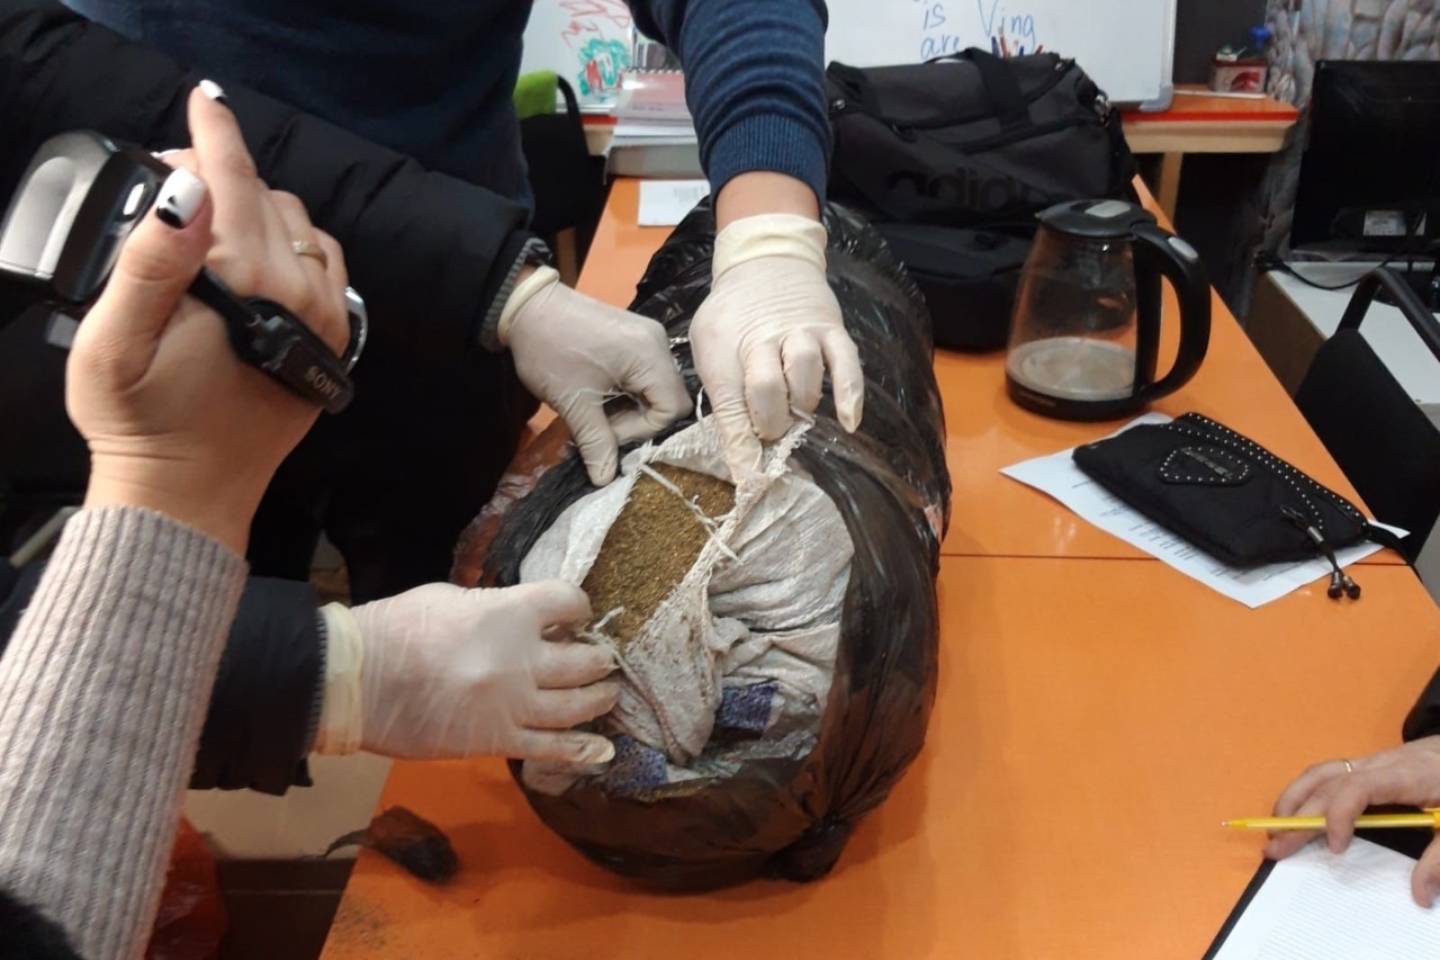 Усть-Каменогорск и ВКО / В учебном помещении ВКО изъяли более 11 килограммов наркотиков